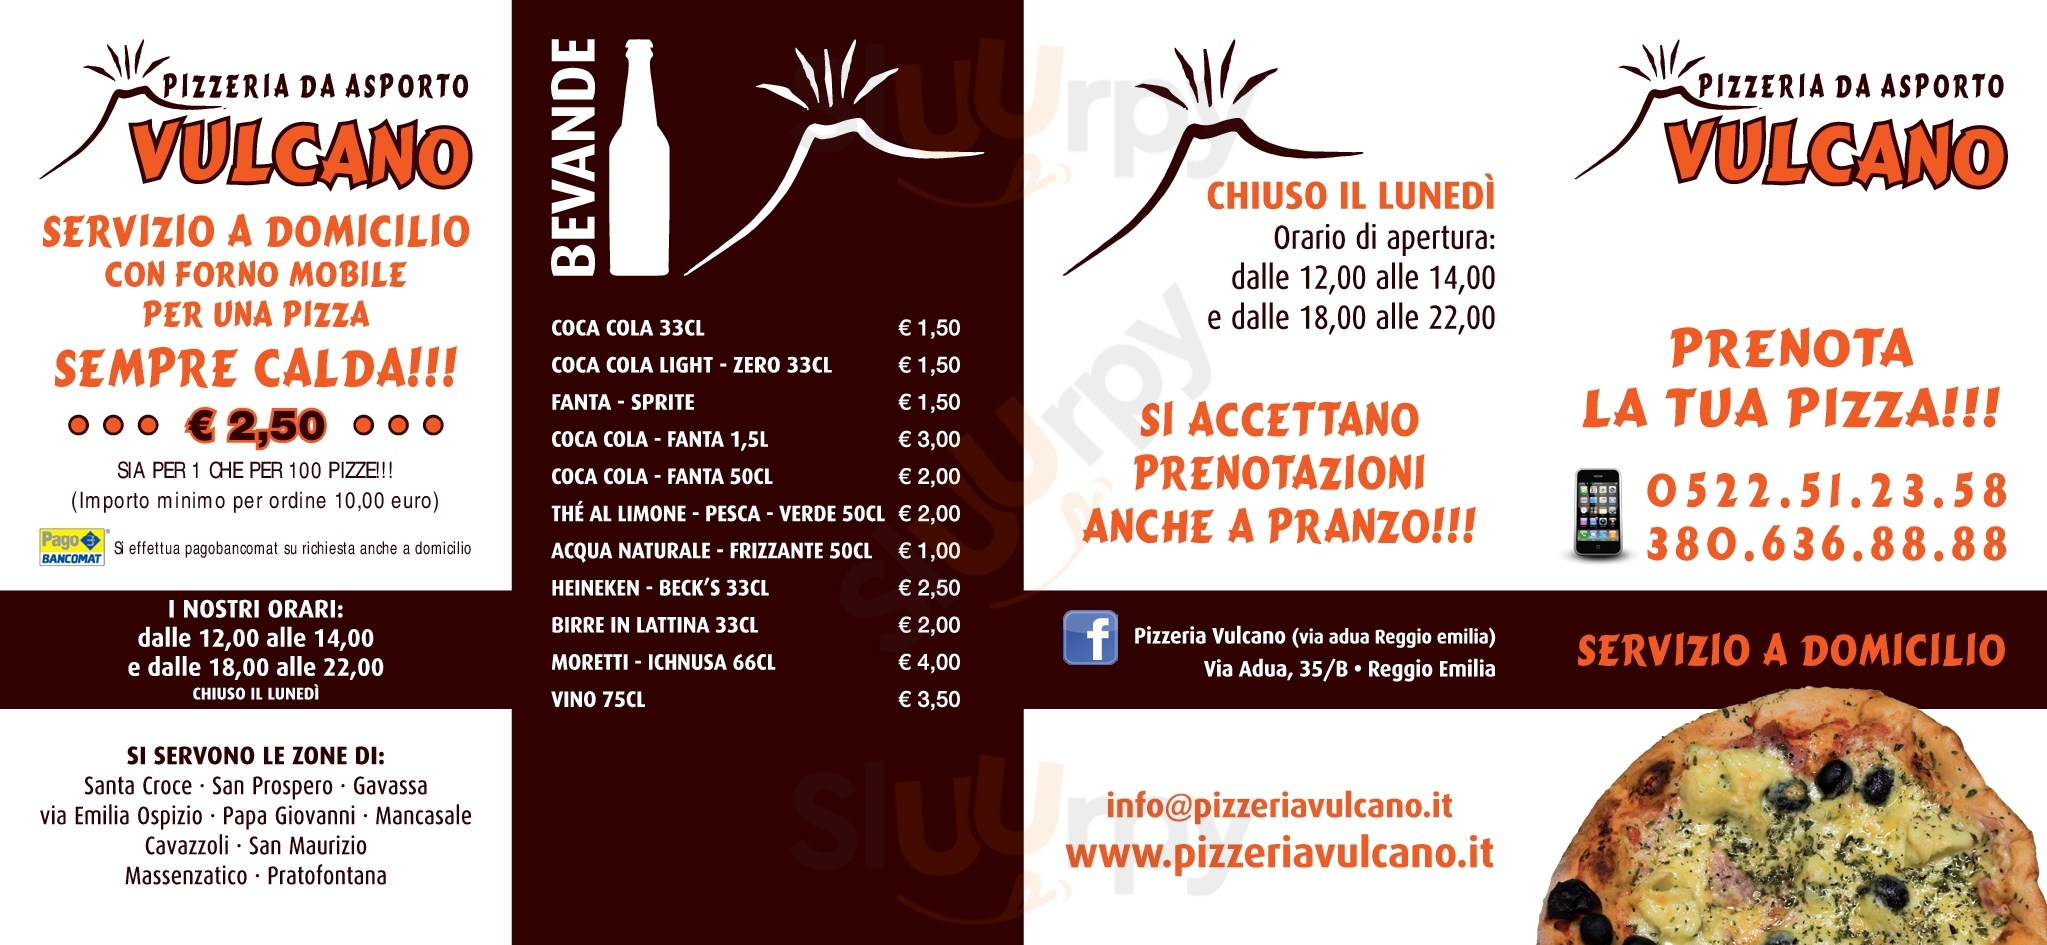 Pizzeria Vulcano Reggio Emilia menù 1 pagina